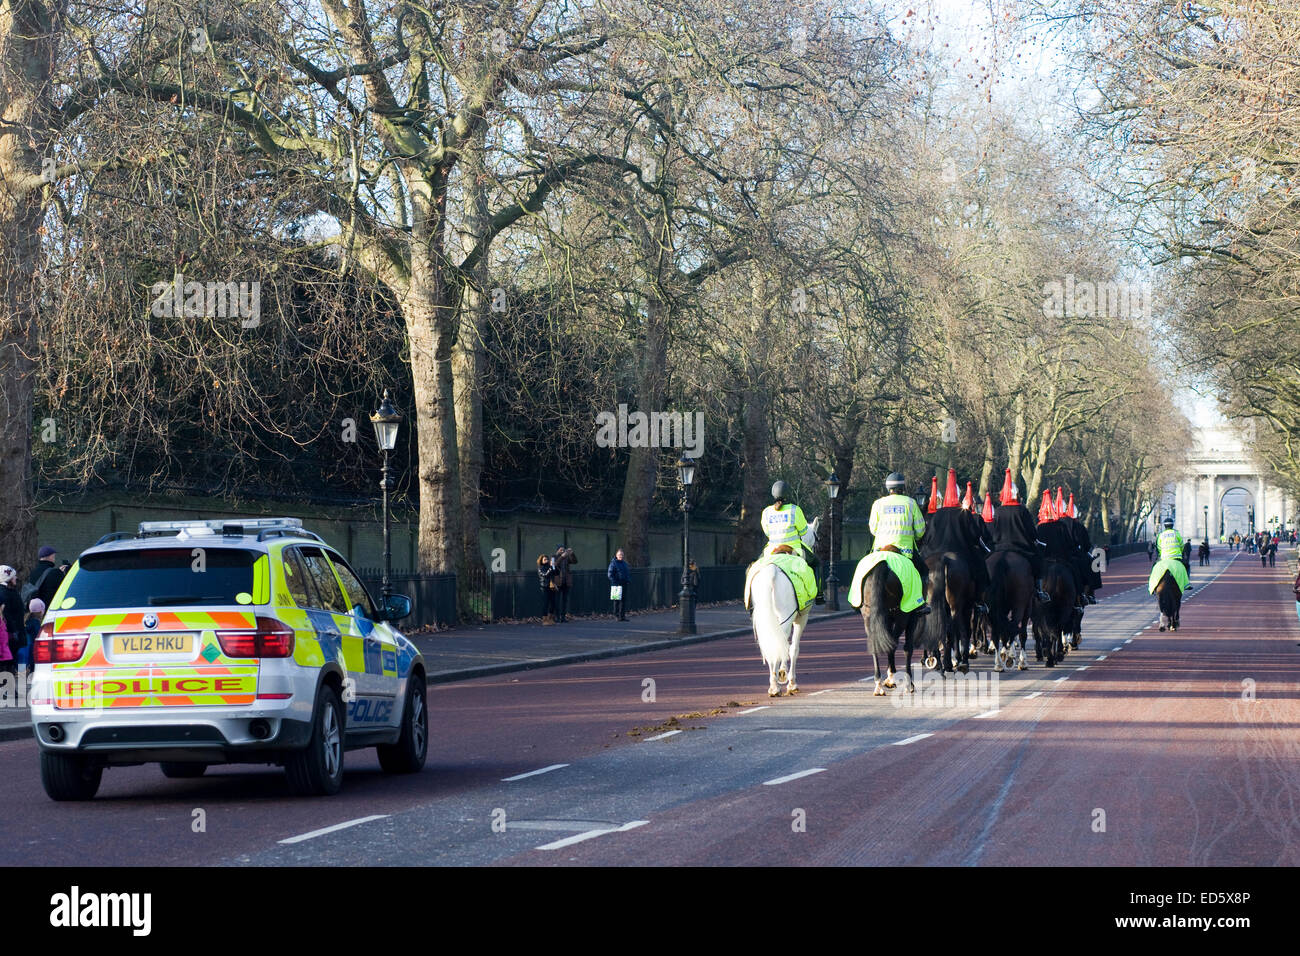 Polizei-Fahrzeug nach Queens Horseguards durch Schutz gegen den Terrorismus auf den Straßen von London England Stockfoto